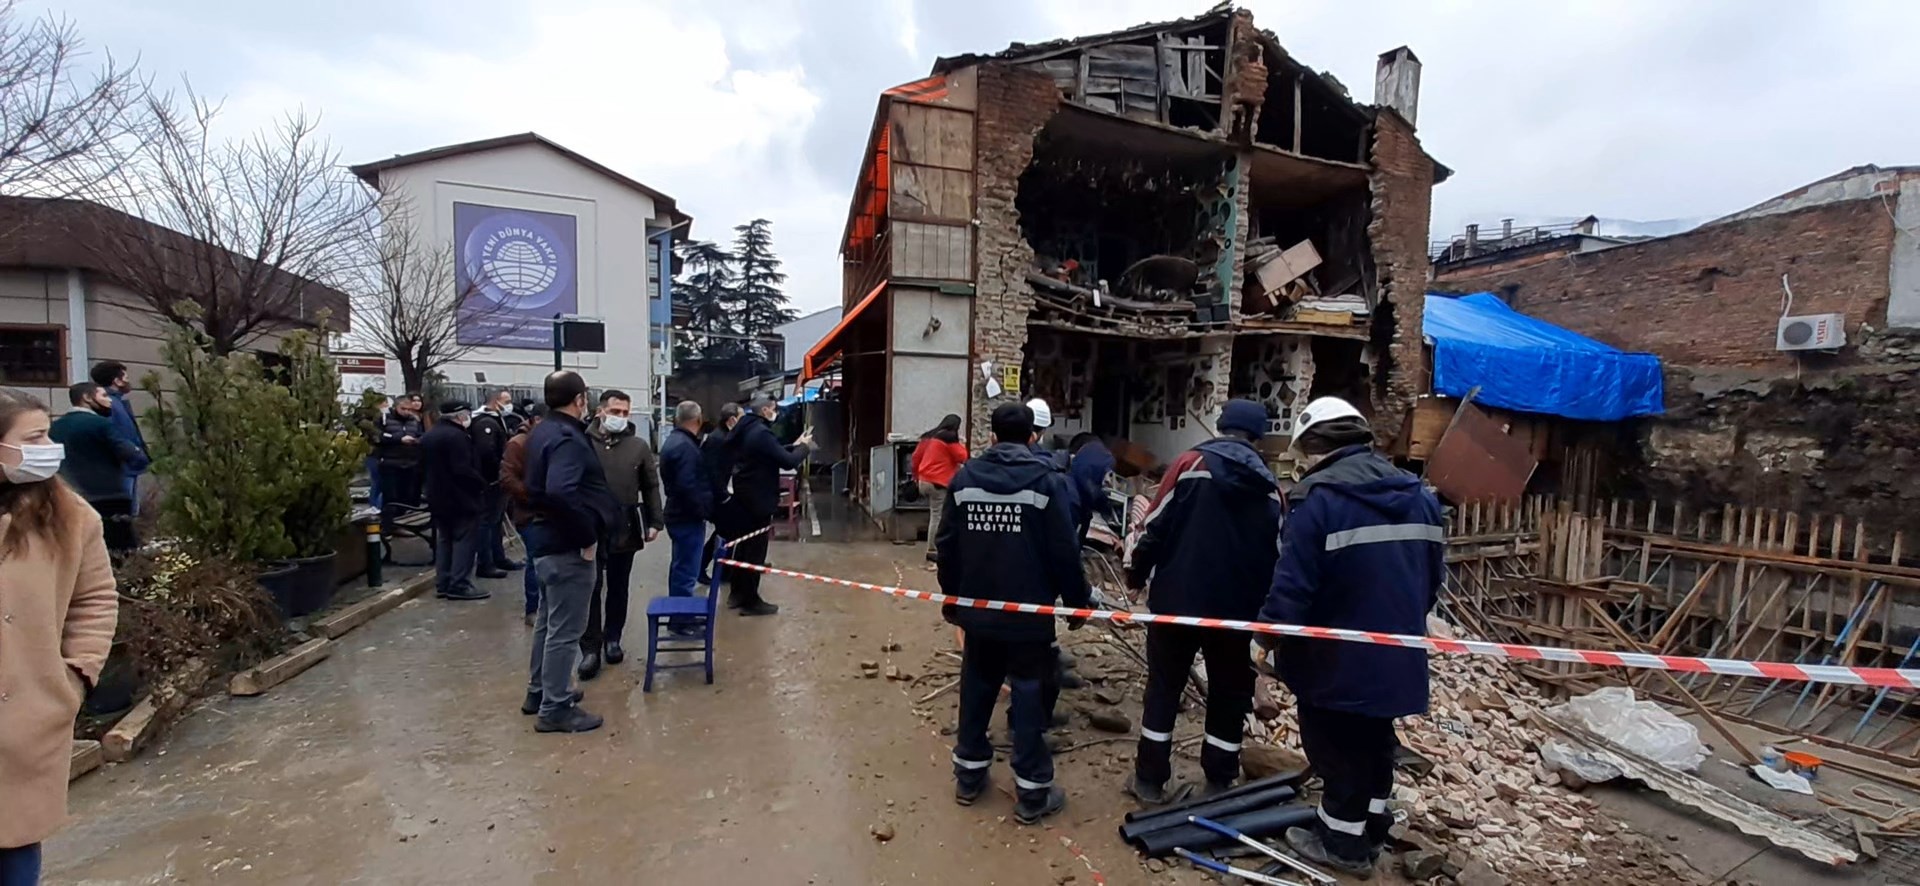 Bursa’da Kafe Büyük Gürültüyle Çöktü, Facianın Eşiğinden Dönüldü